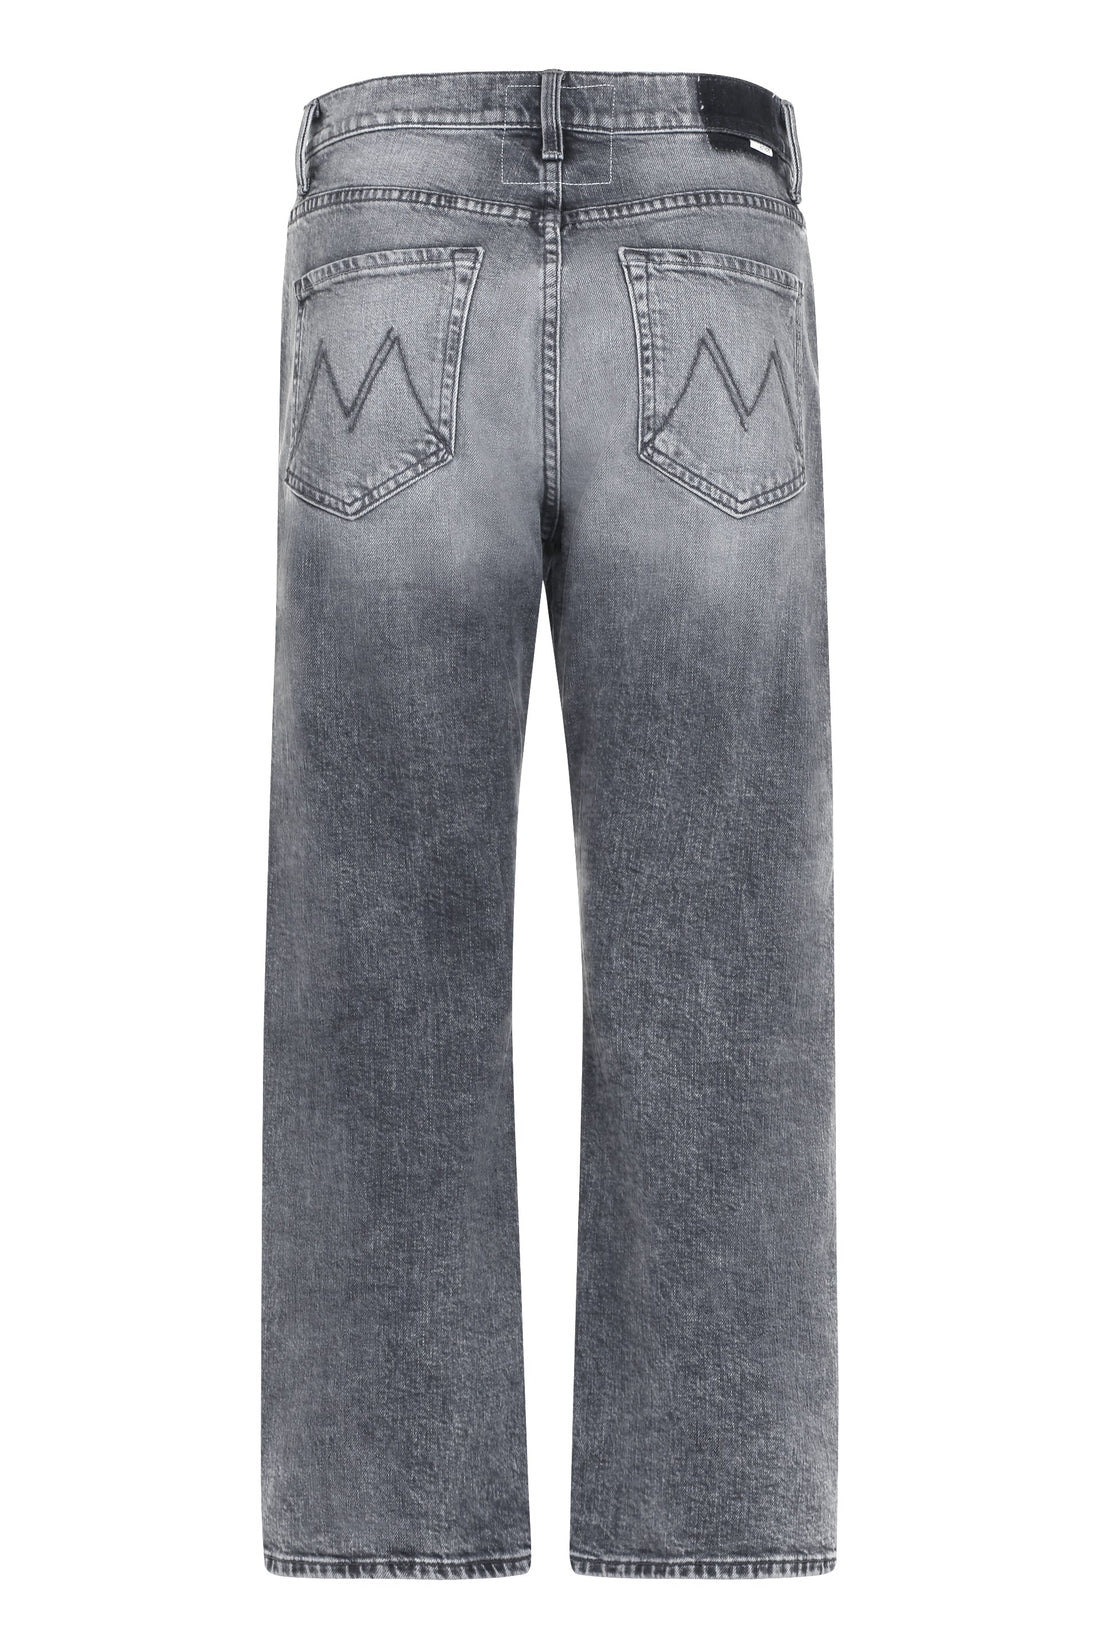 Mother-OUTLET-SALE-The Ditcher Crop comfort jeans-ARCHIVIST